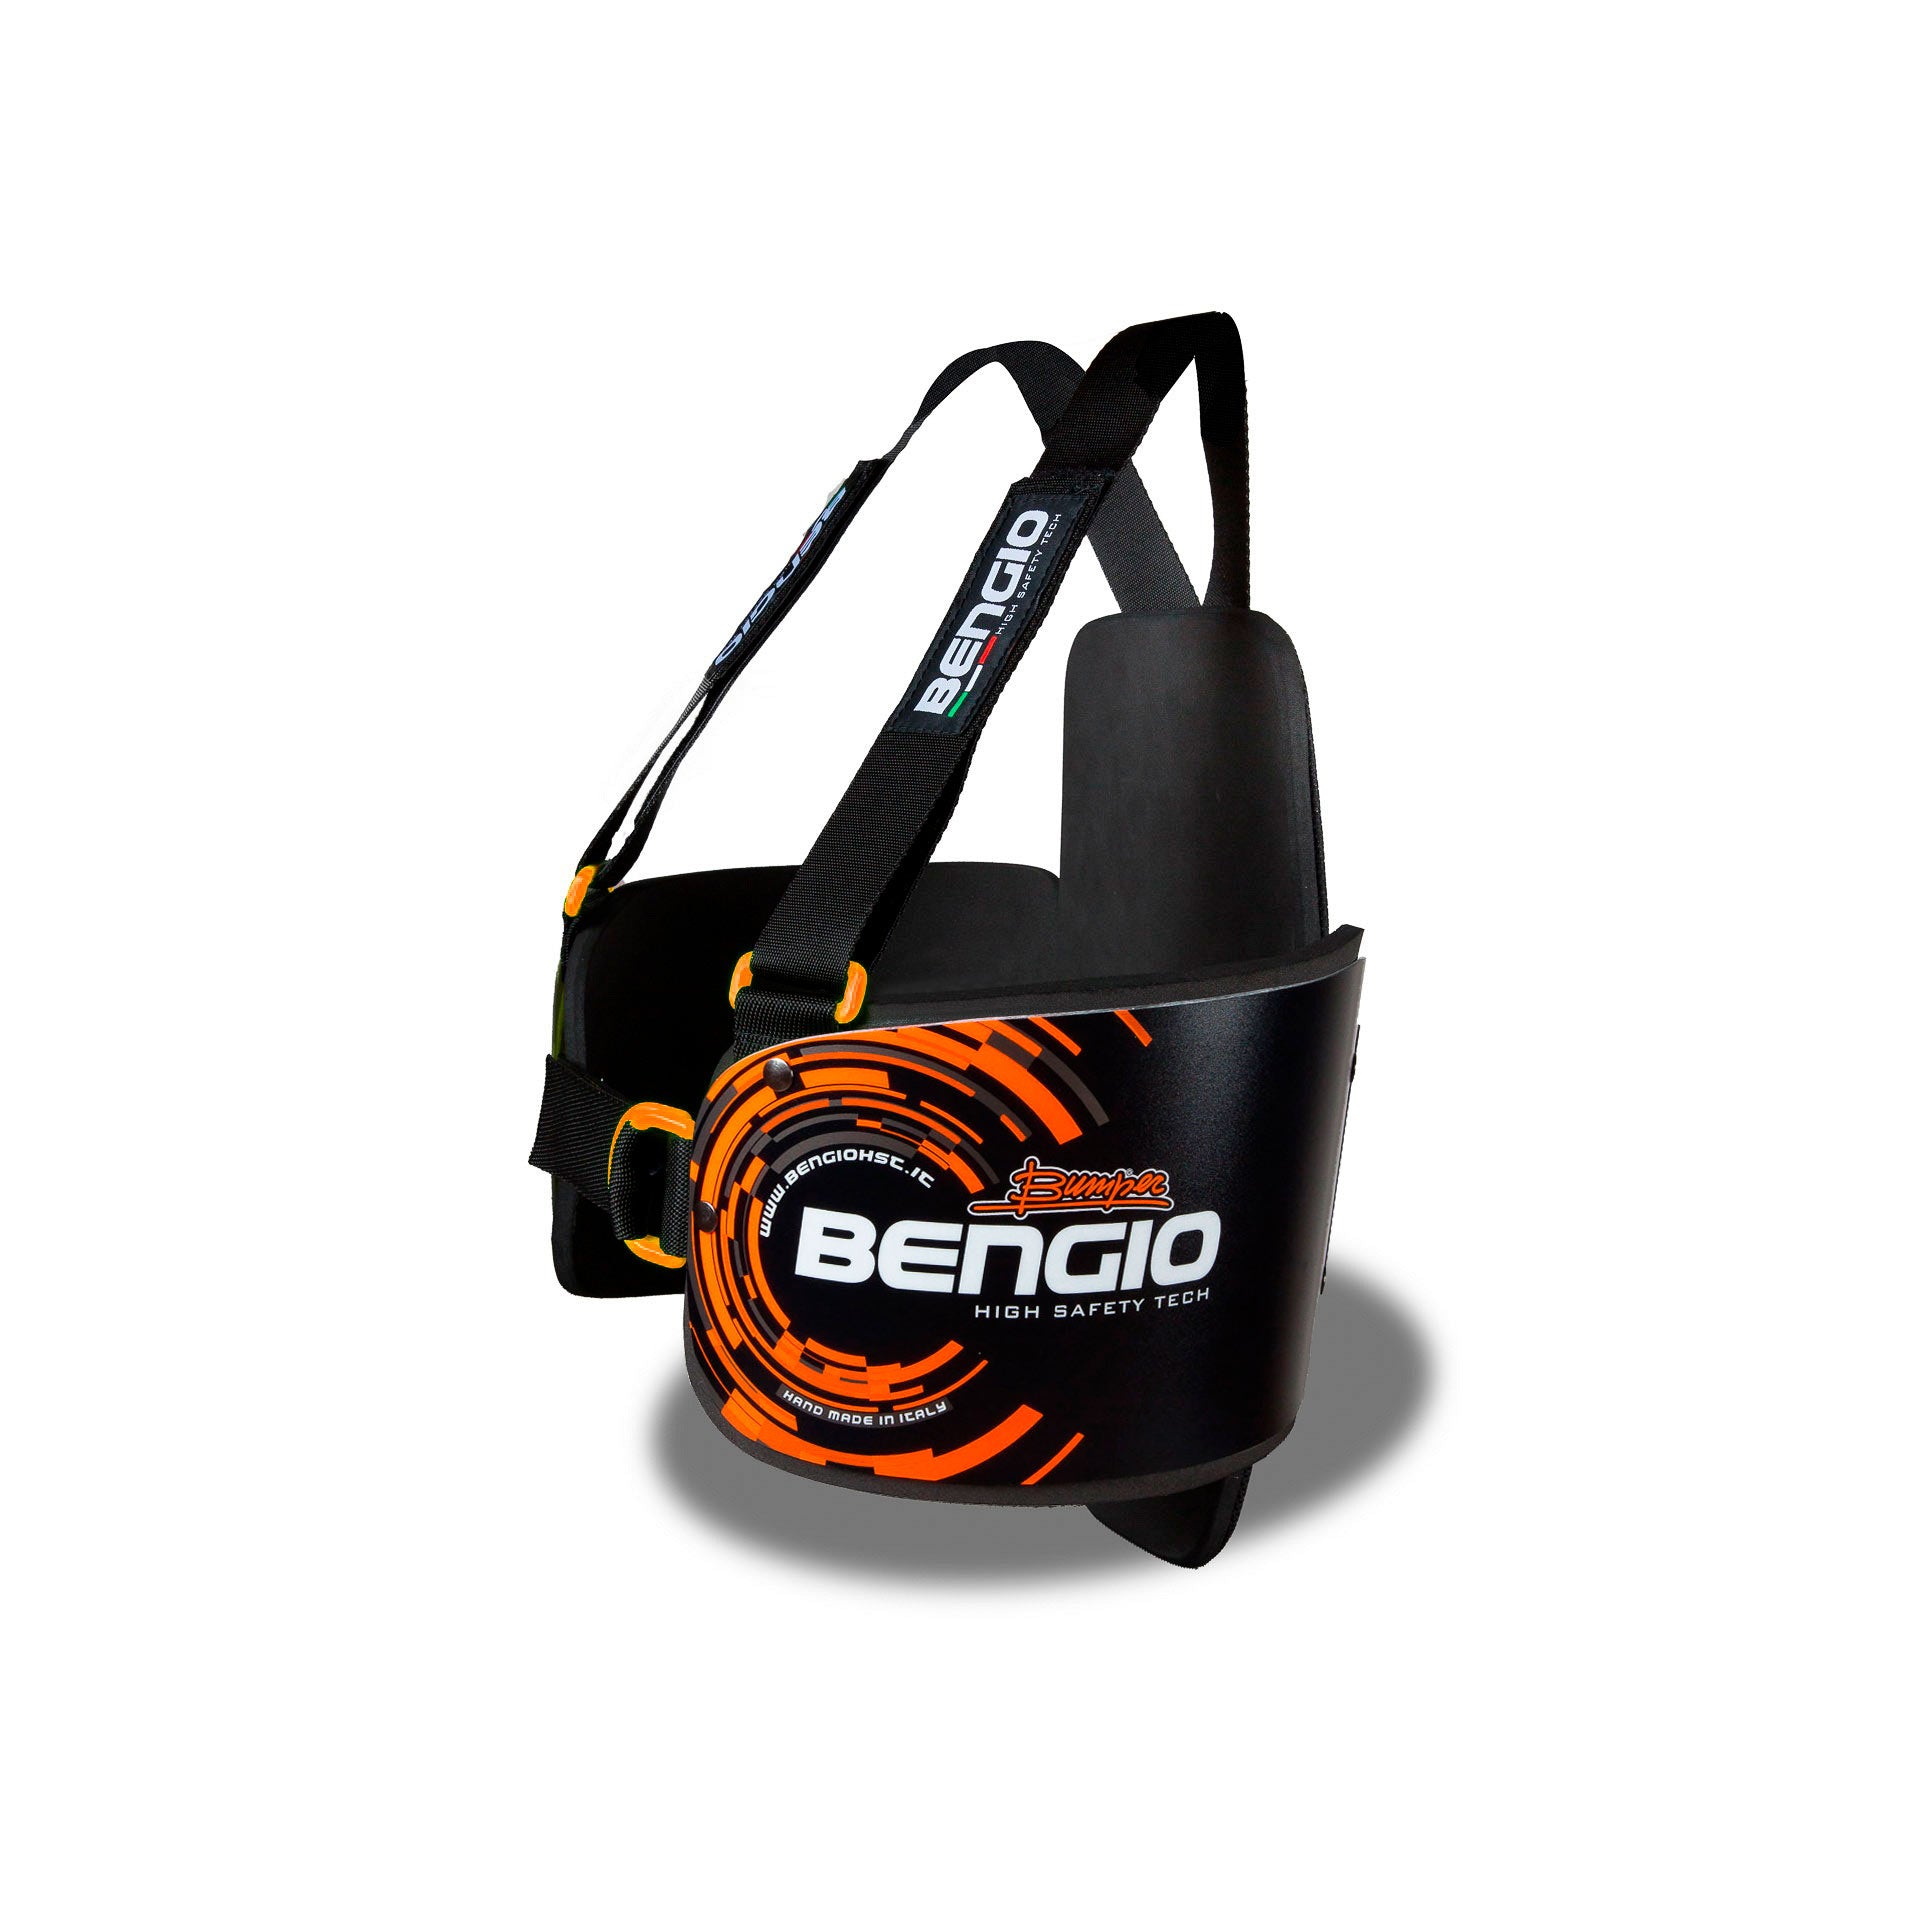 BENGIO STDPLXXLBO BUMPER Plus Захист ребер для картингу, чорний/помаранчевий, розмір XXL Photo-1 